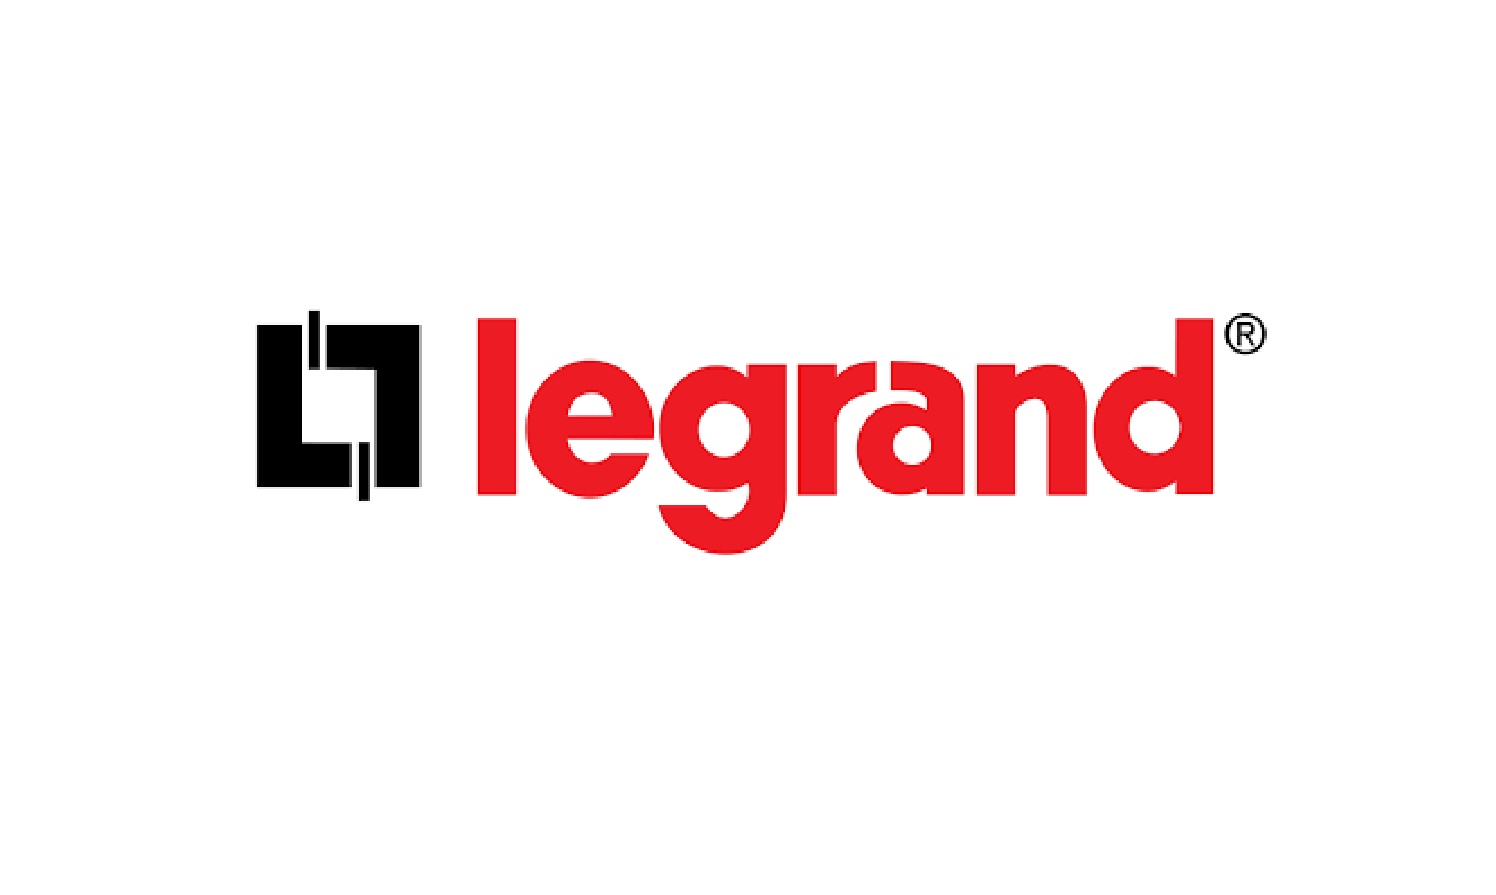 Legrand sponsor logo